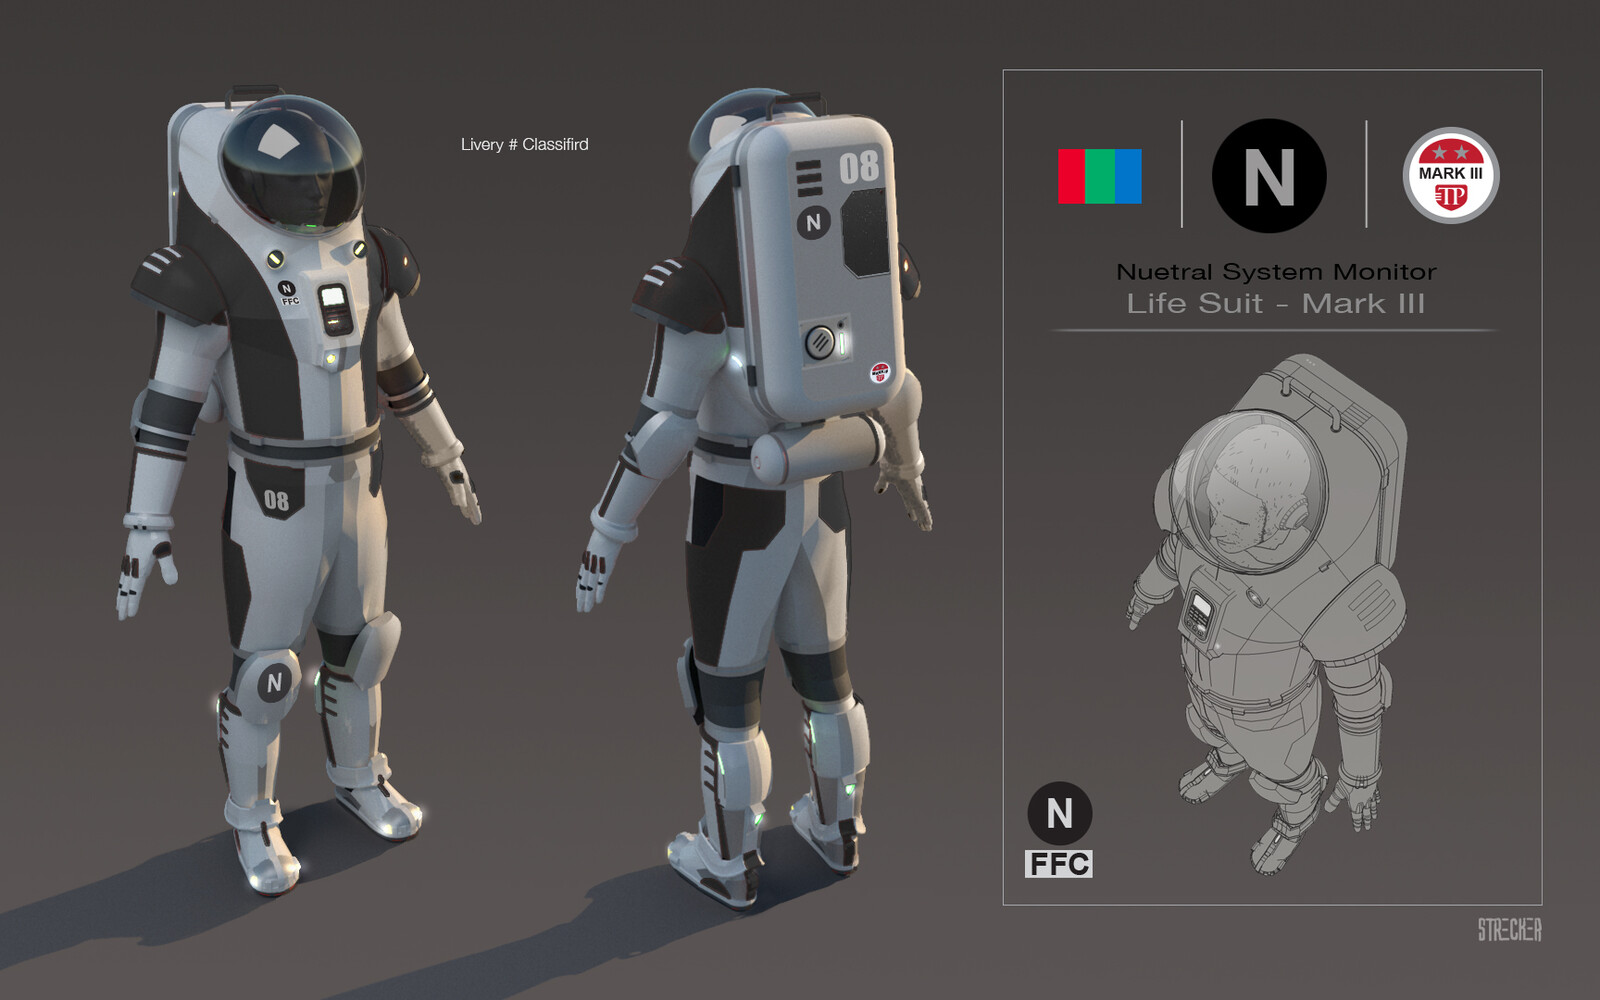 Space Suit concept